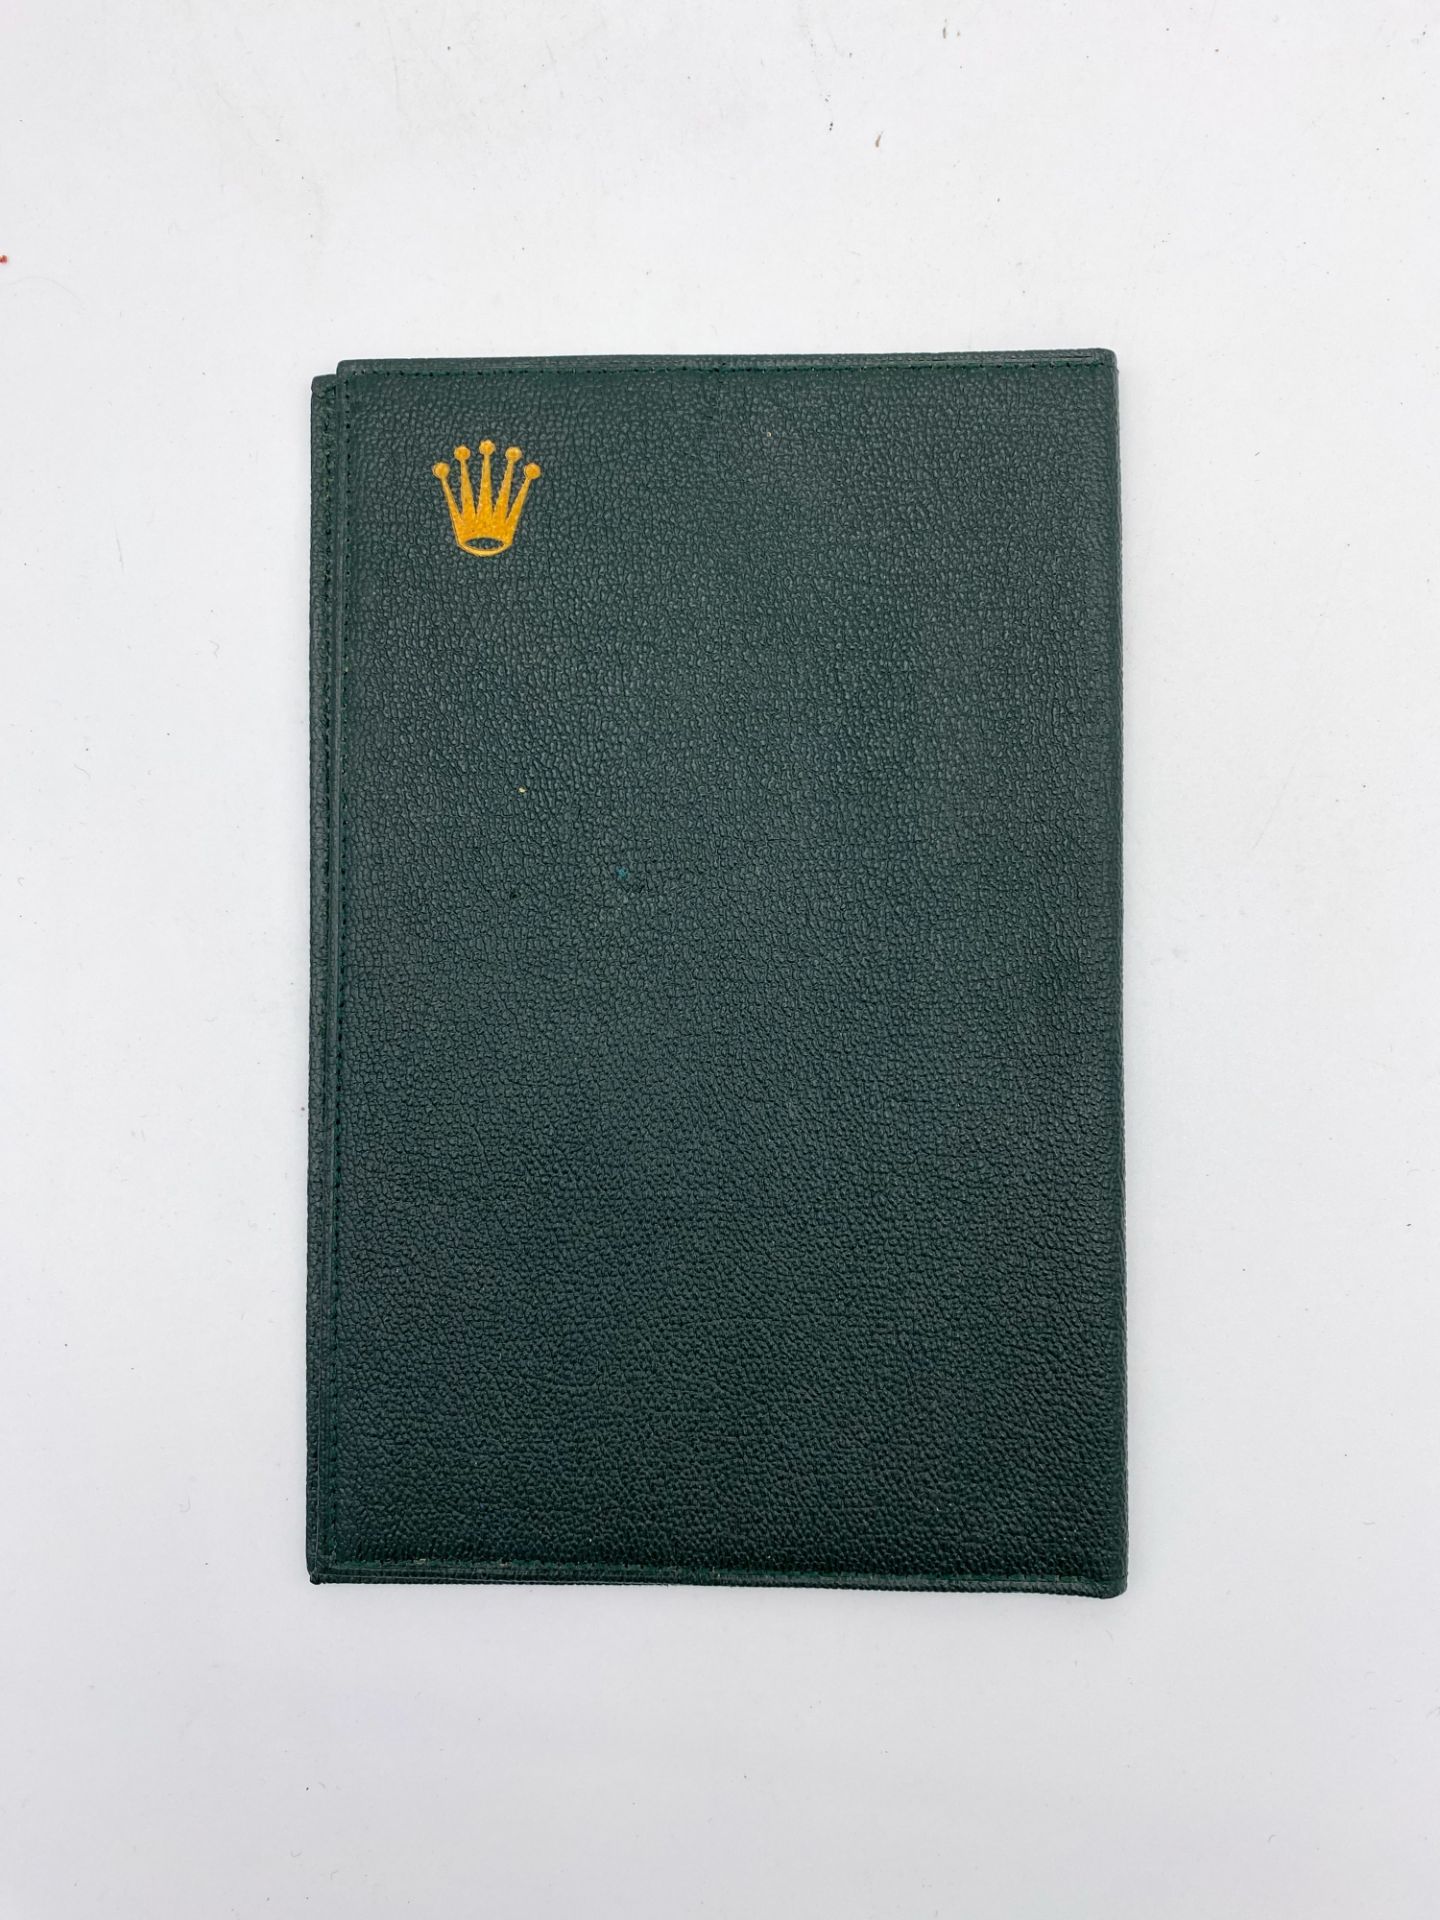 ROLEX Maroquinerie - Pochette en maroquin vert émeraude - insigne en haut à droite - ca 1960 - Image 2 of 3